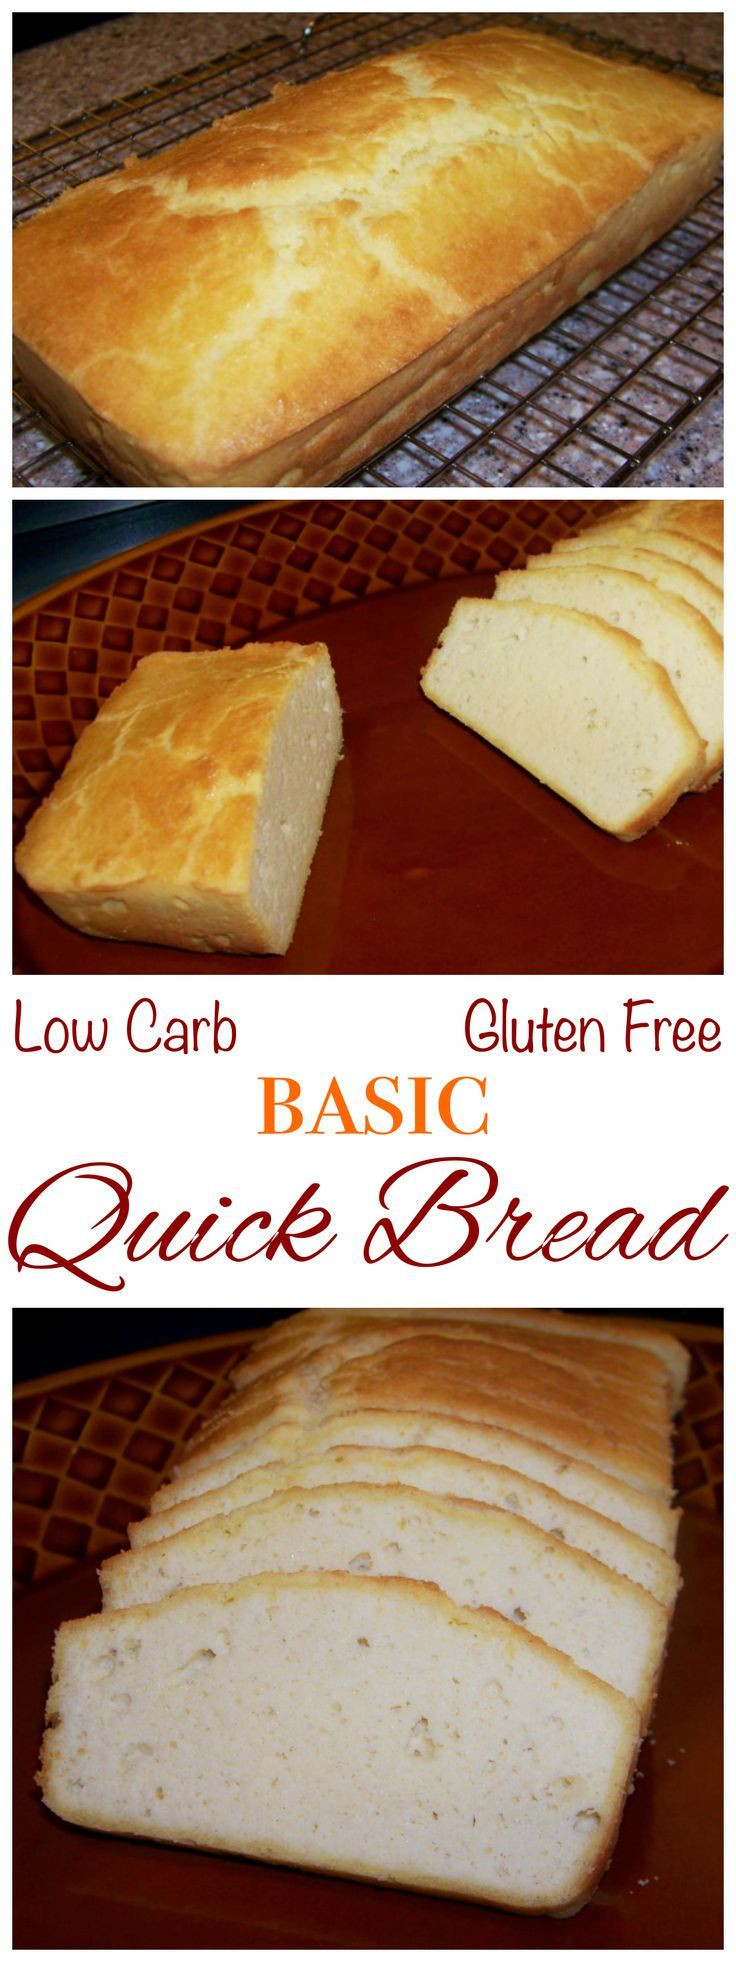 Is Gluten Free Bread Good For Diabetics
 The 25 best Diabetic bread ideas on Pinterest